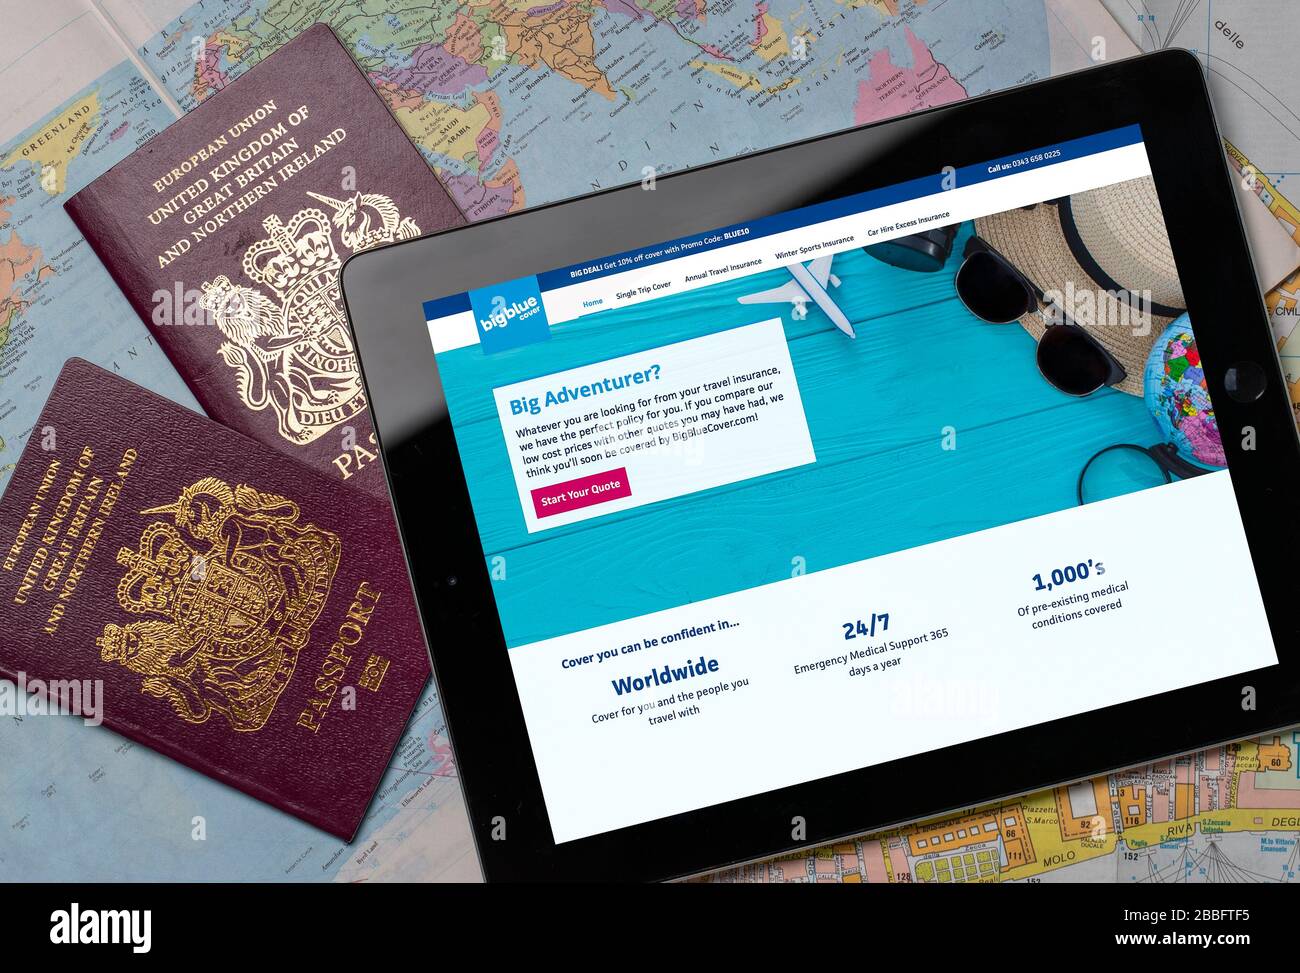 Big Blue Cover Travel Insurance Website auf einem iPad oder Tablet. (Nur redaktionelle Verwendung) Stockfoto